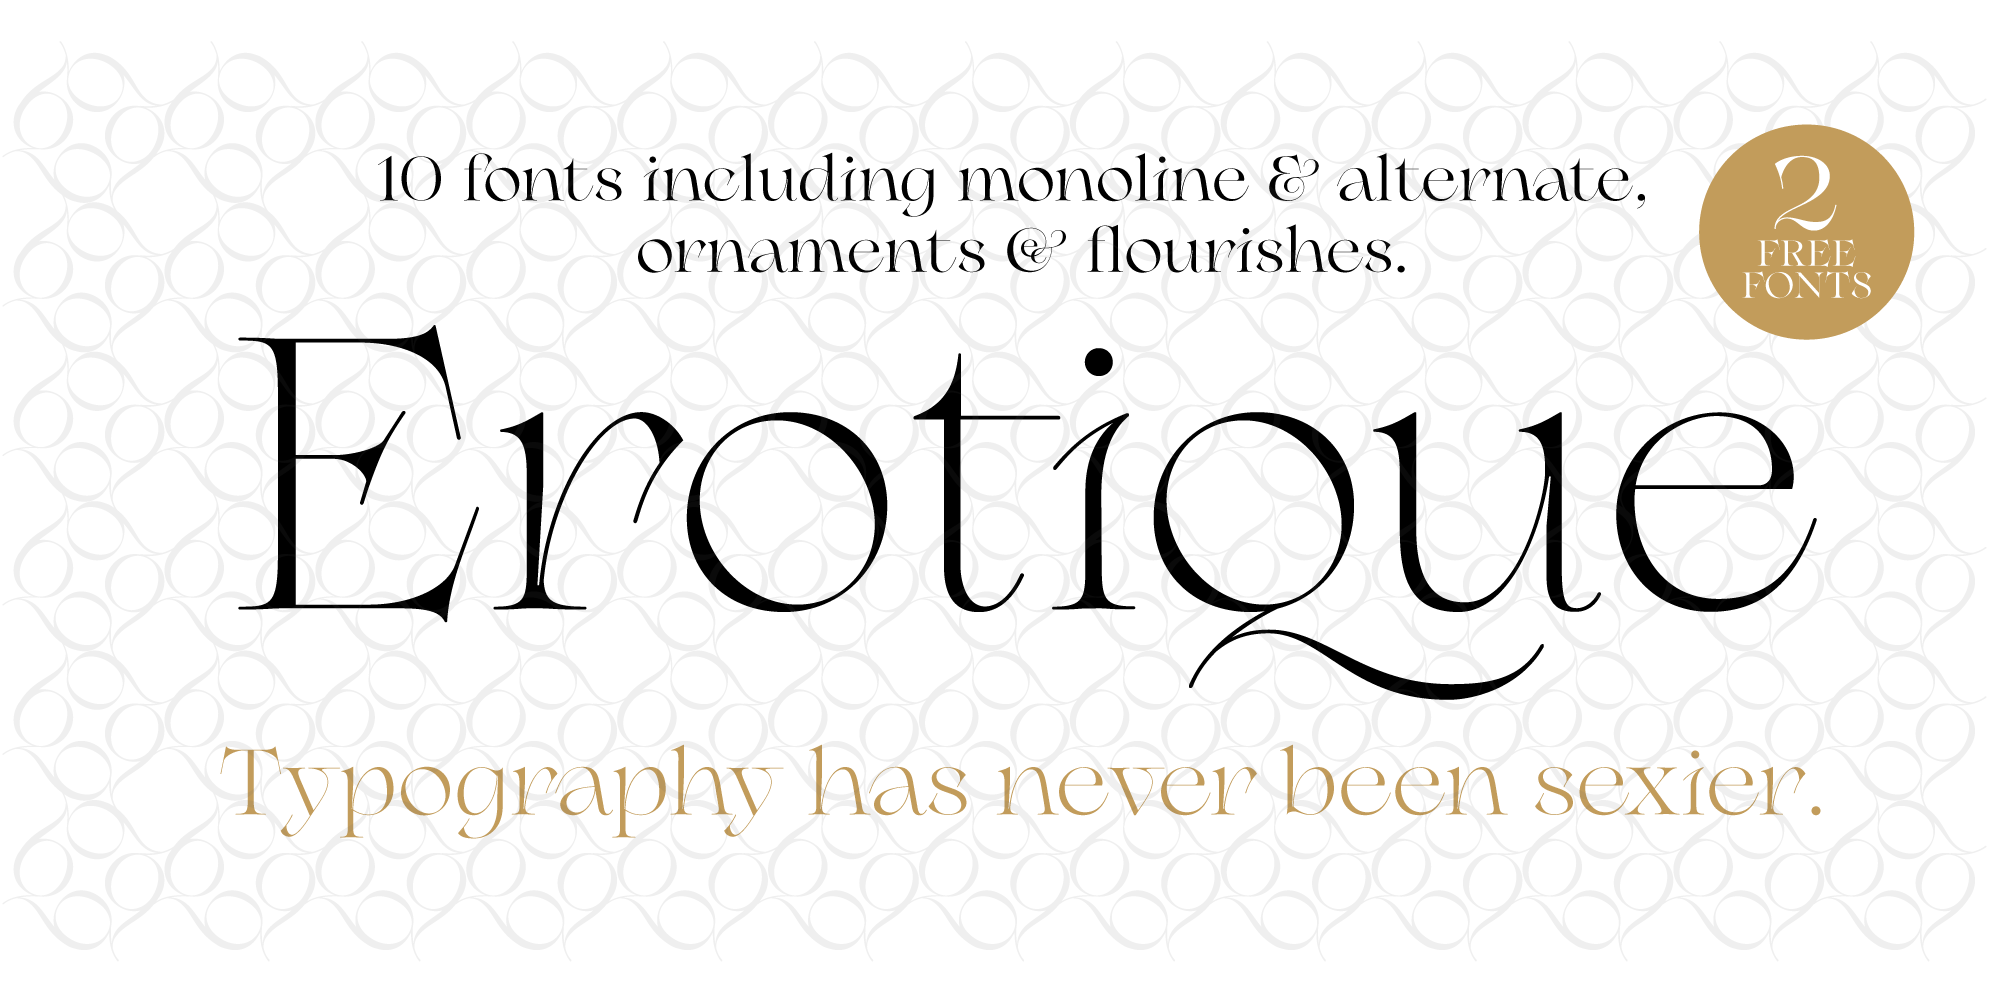 Erotique Typeface By Zetafonts